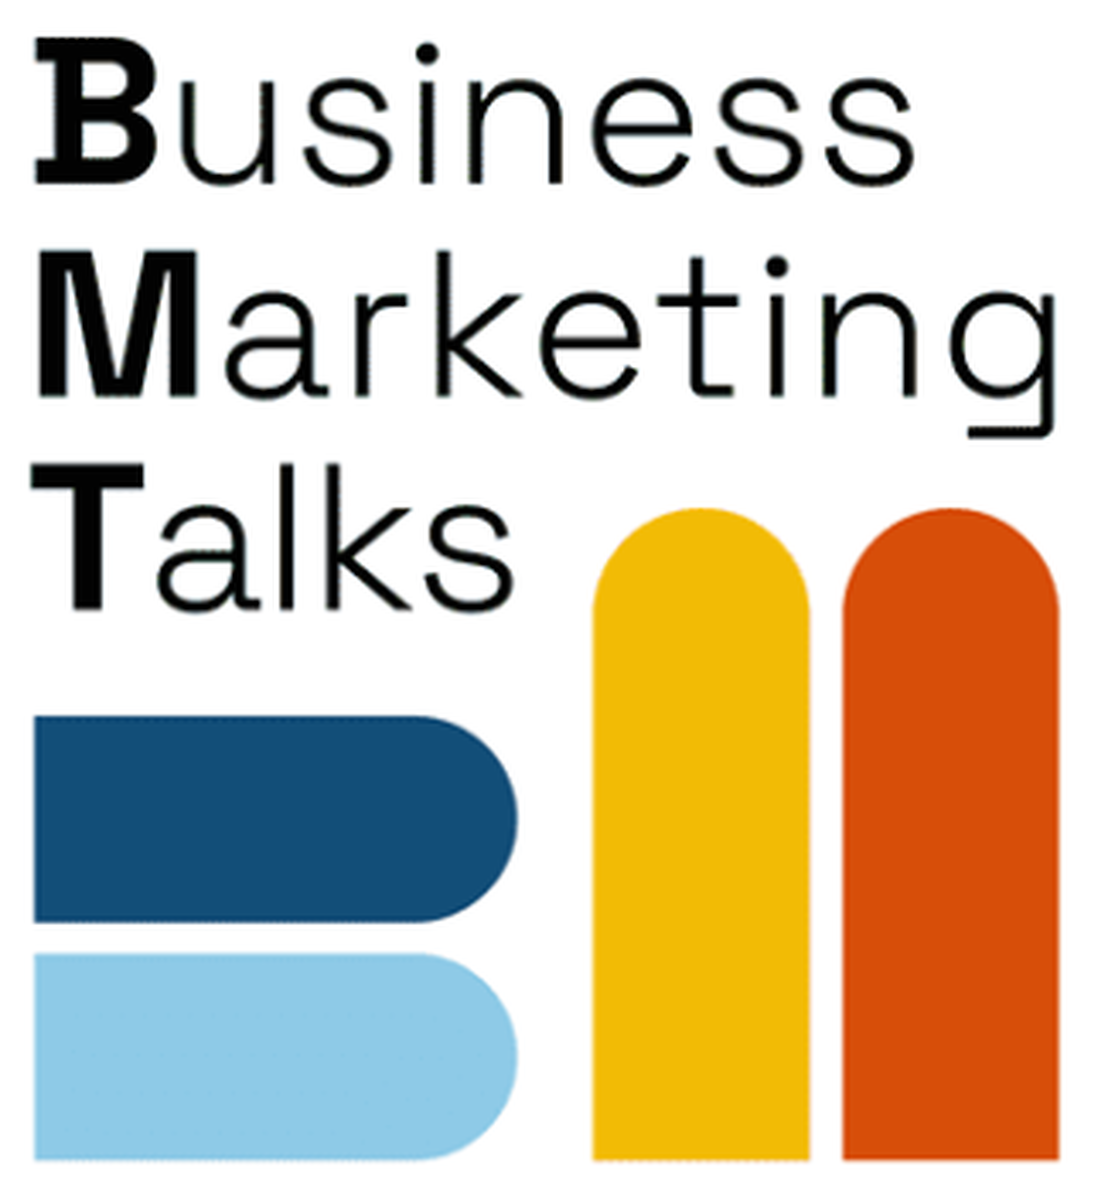 Business Marketing Talks